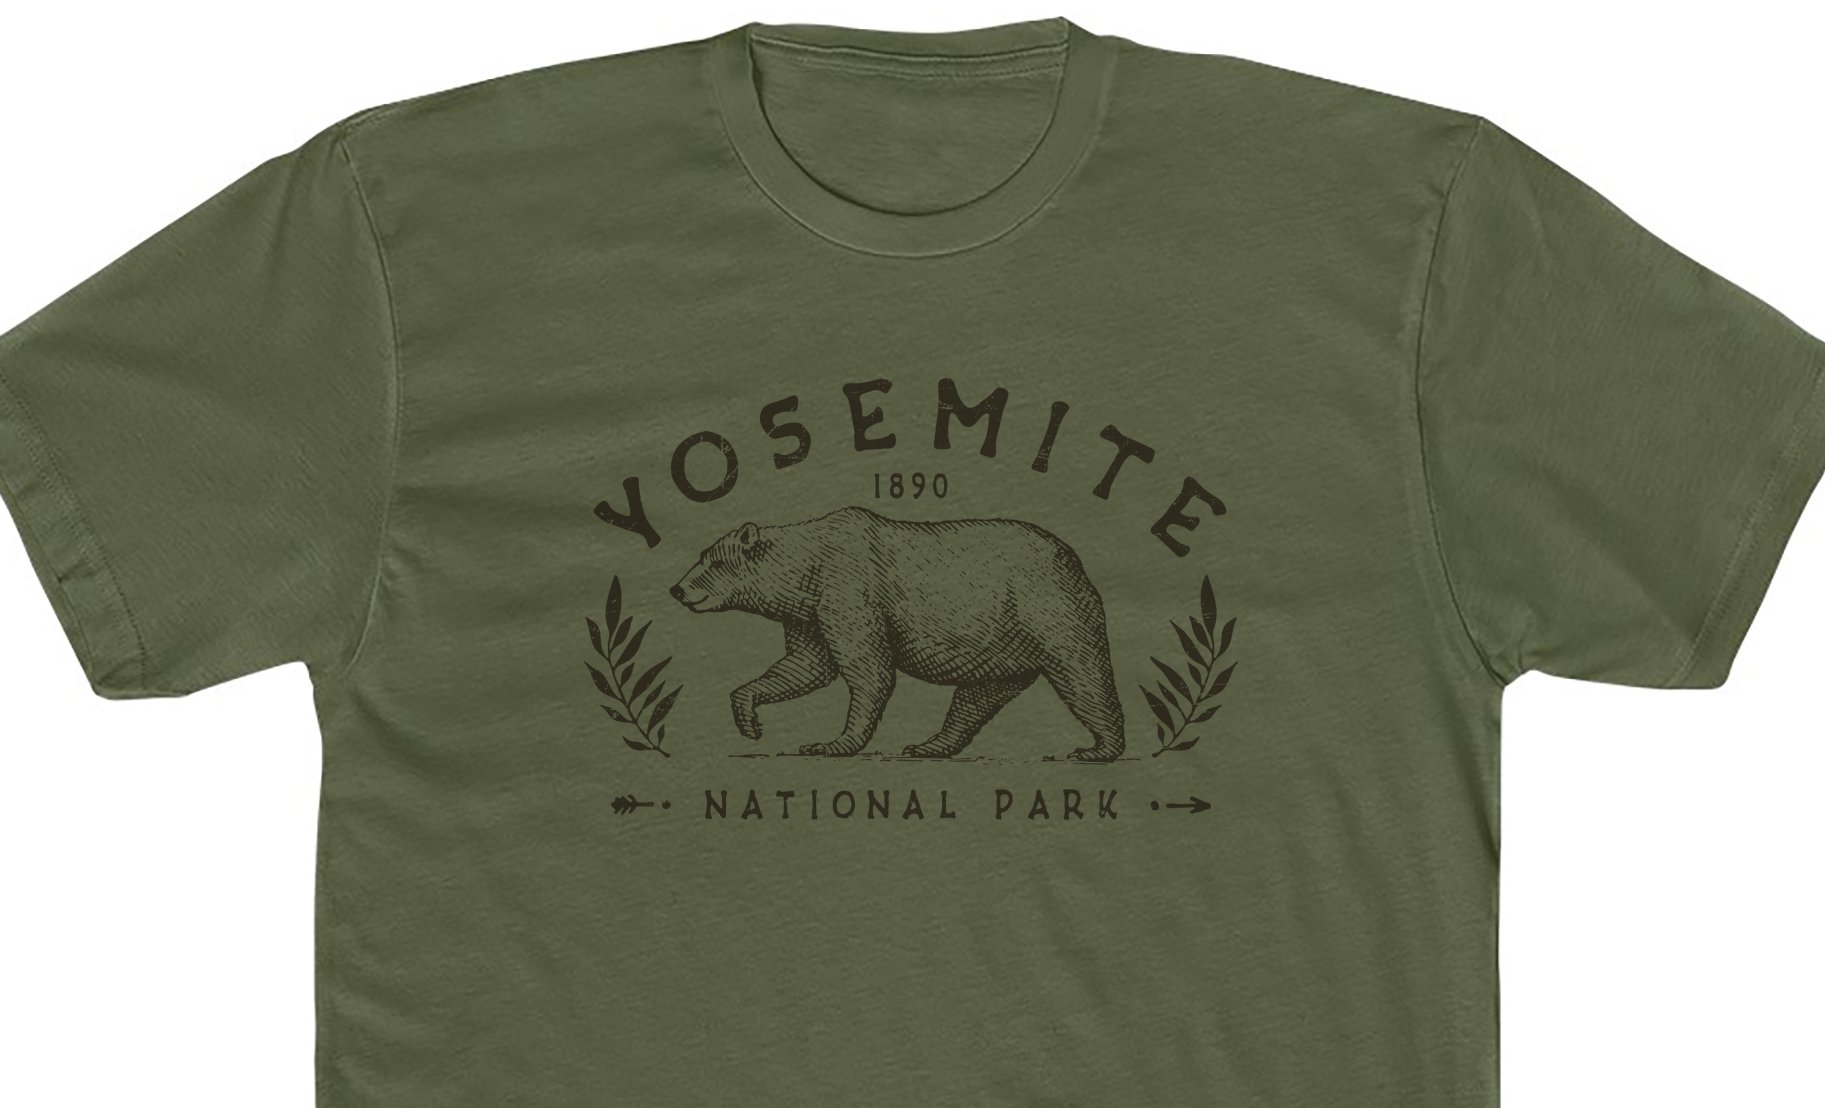 02-YosemiteNationalPark-Shirt-green.jpg